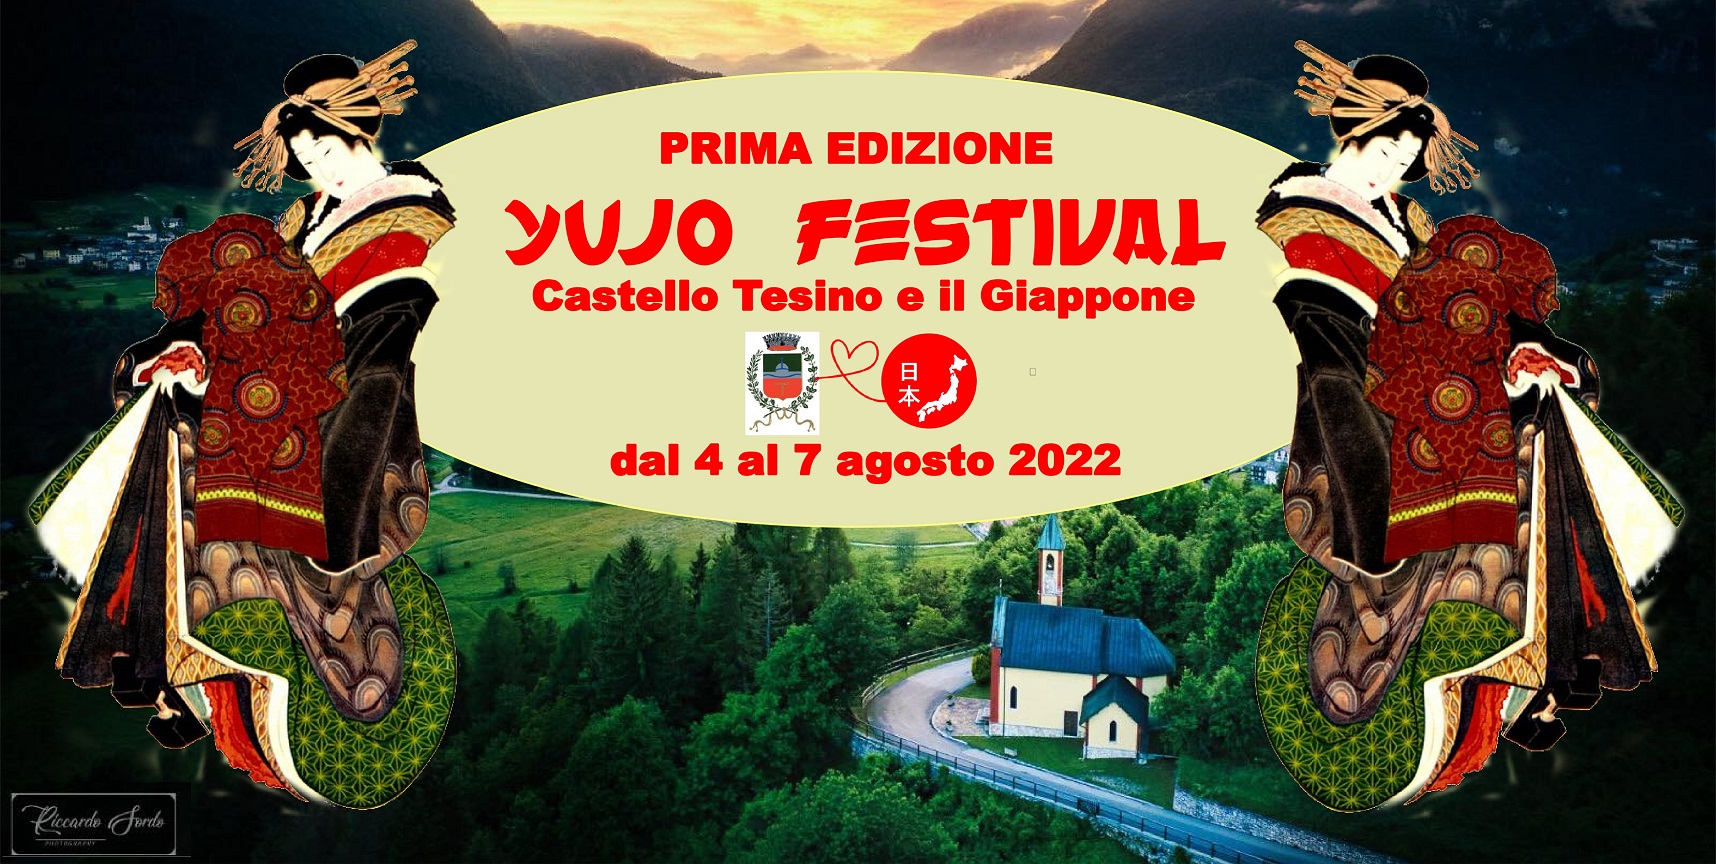 Yujo Festival: Castello Tesino e il Giappone